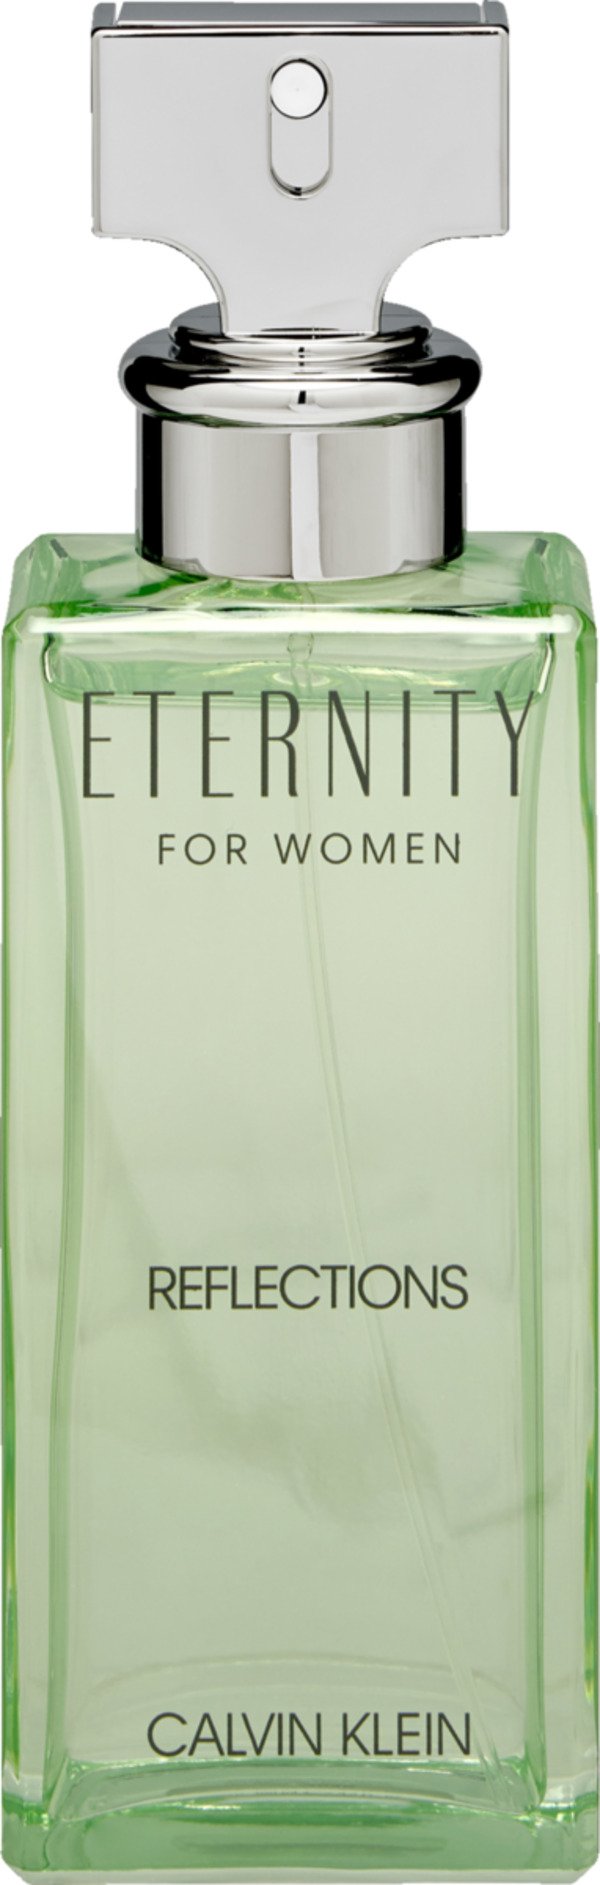 Bild 1 von Calvin Klein Eternity Reflections for Women, EdP 100ml